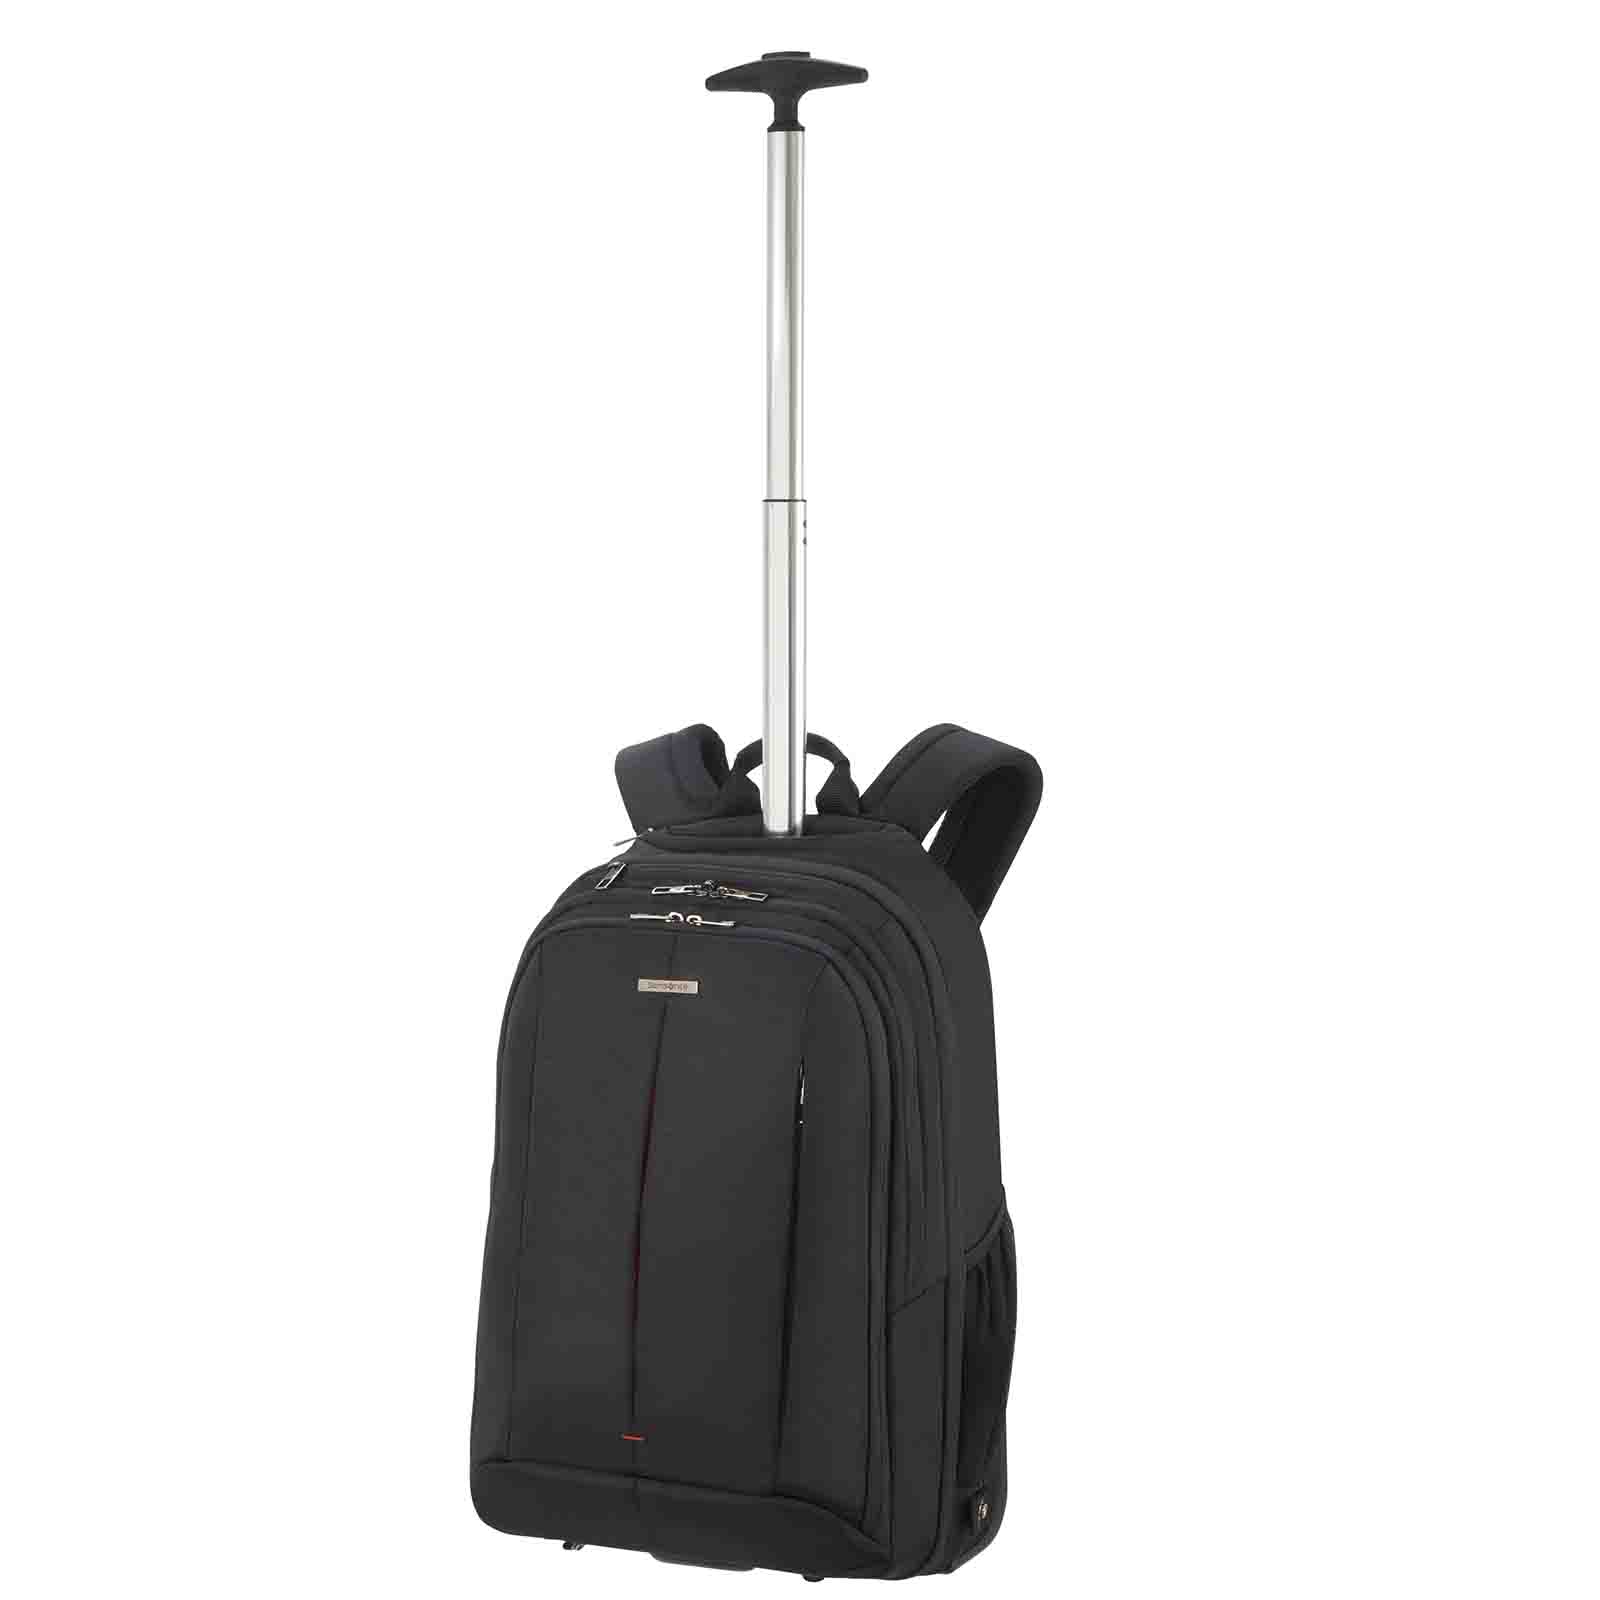 Samsonite-Guardit-2-17-Inch-Wheeled-Laptop-Backpack-Trolley